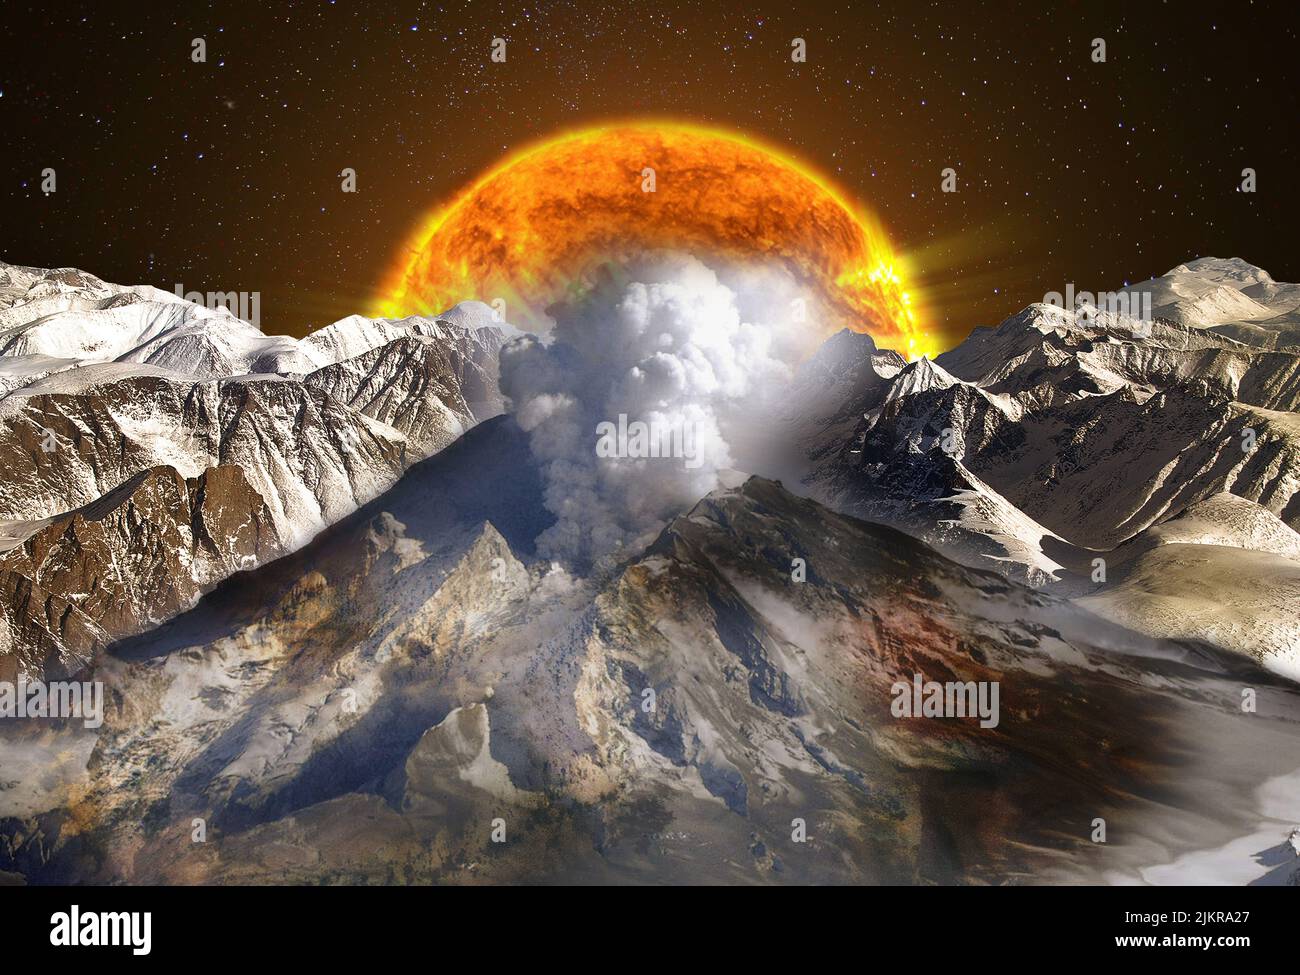 Landschaft mit Bergen und Vulkan unter dem Sternenhimmel und riesiger Sonne, die aufgeht. Elemente dieses Bildes, die von der NASA eingerichtet wurden. Stockfoto